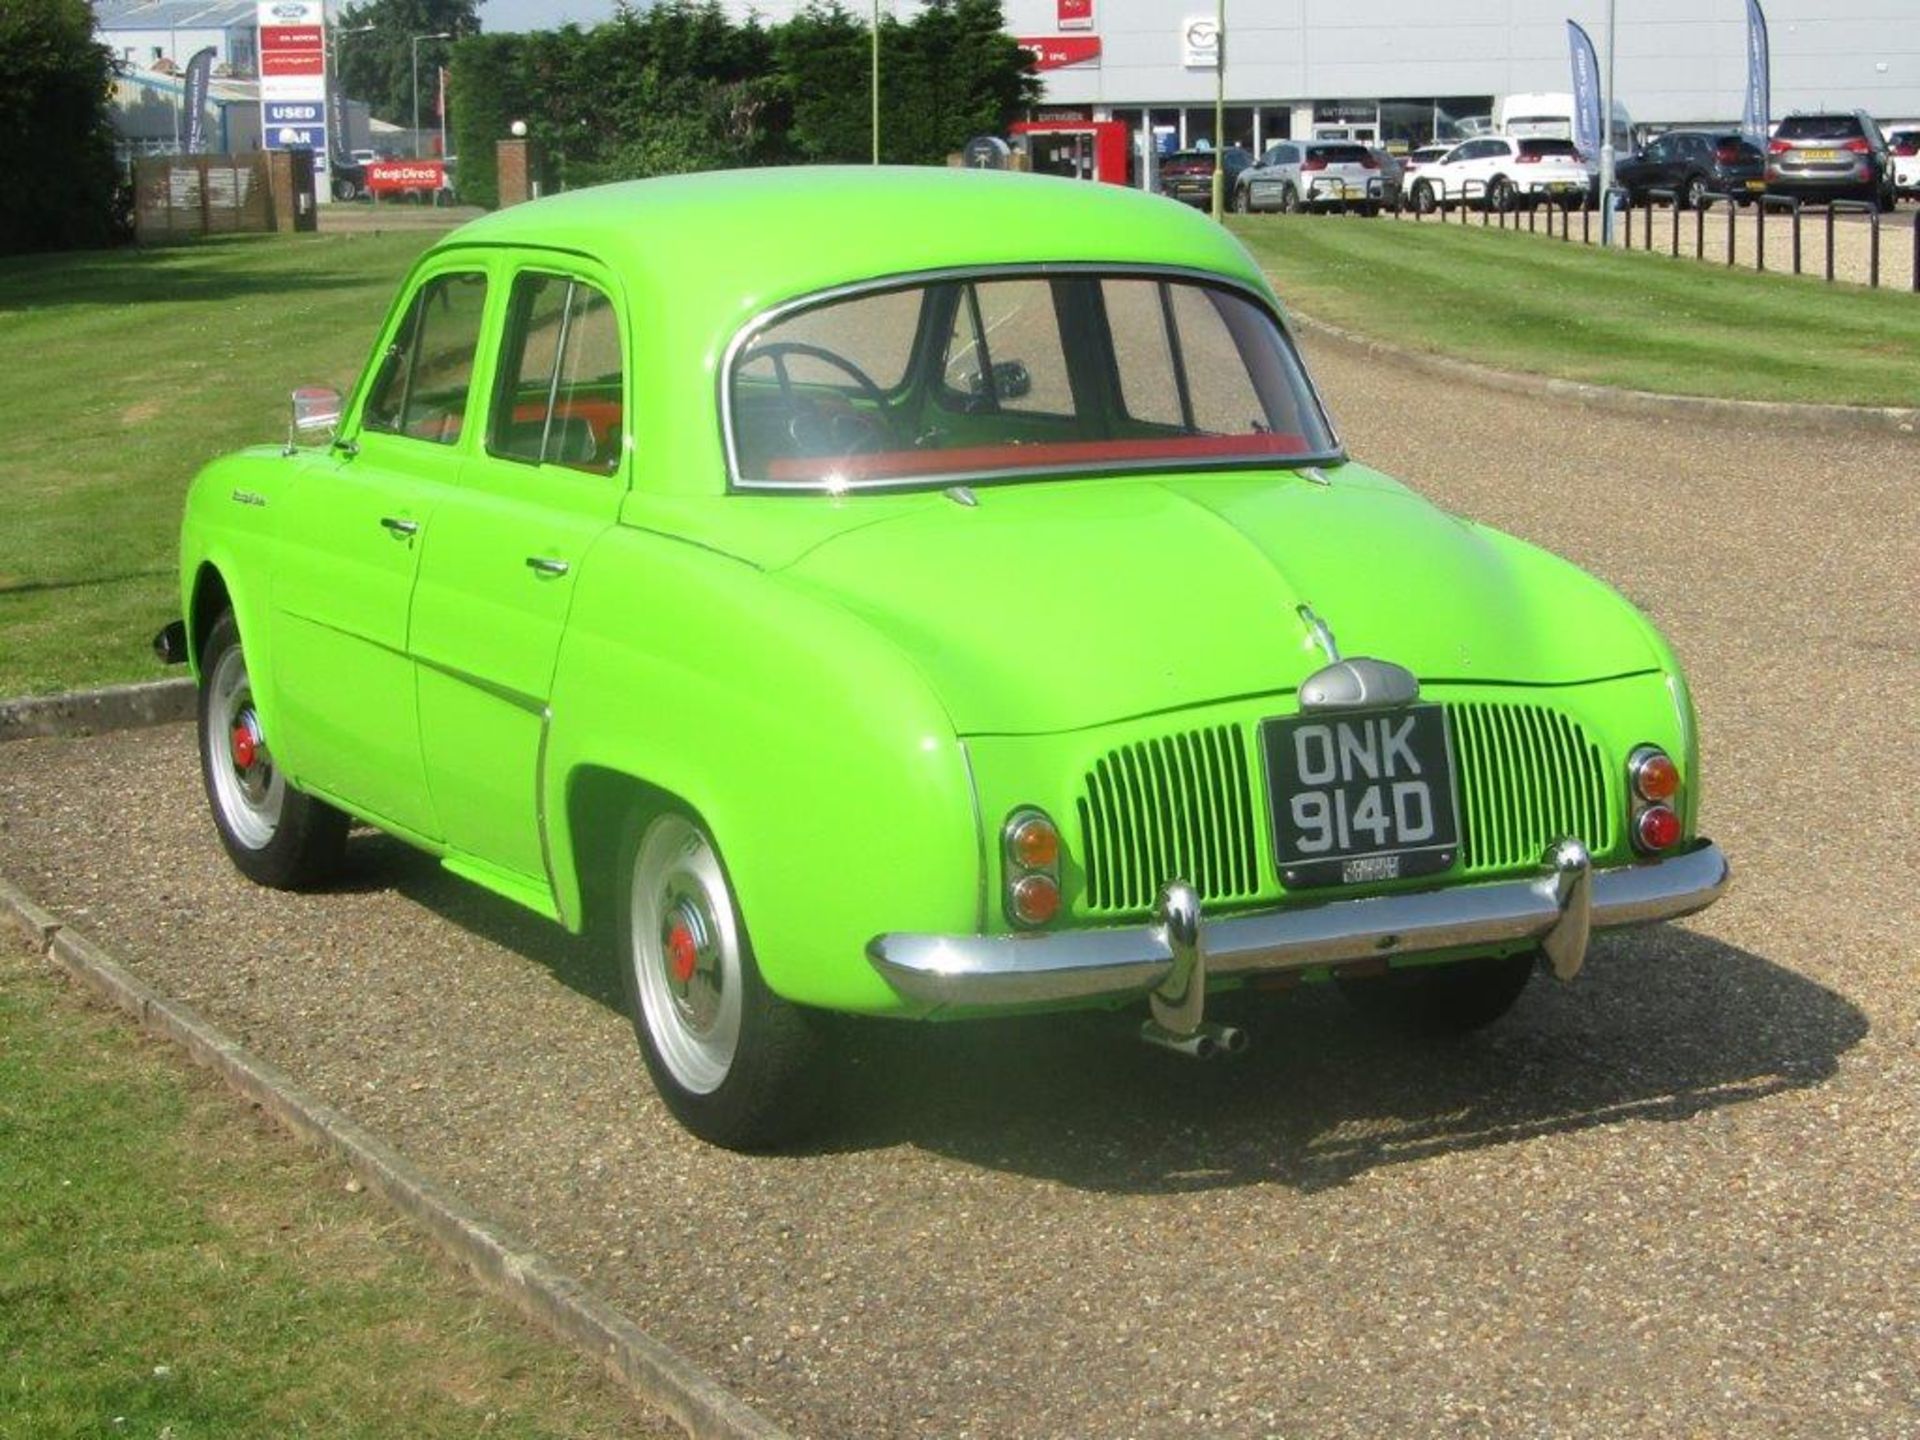 1966 Renault Gordini Dauphine - Image 3 of 17